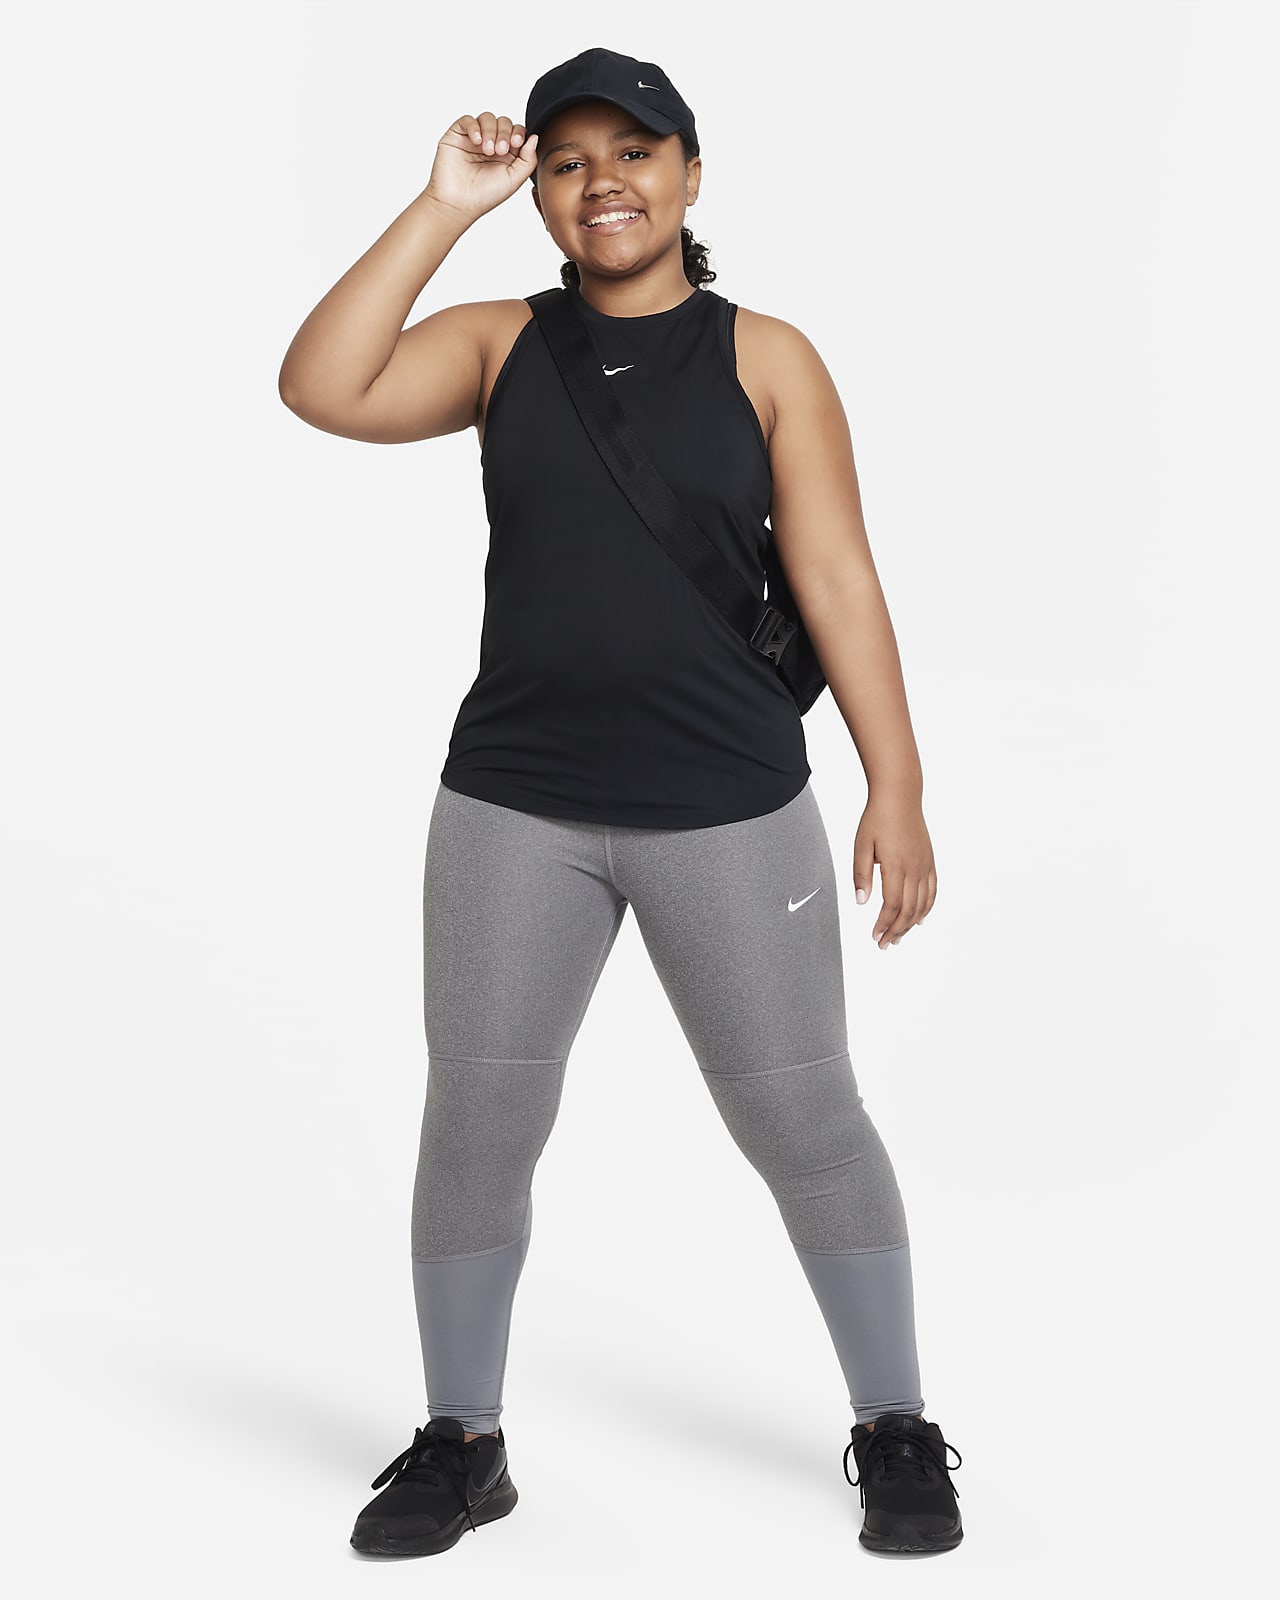 Nike Older Girls Legging - Black